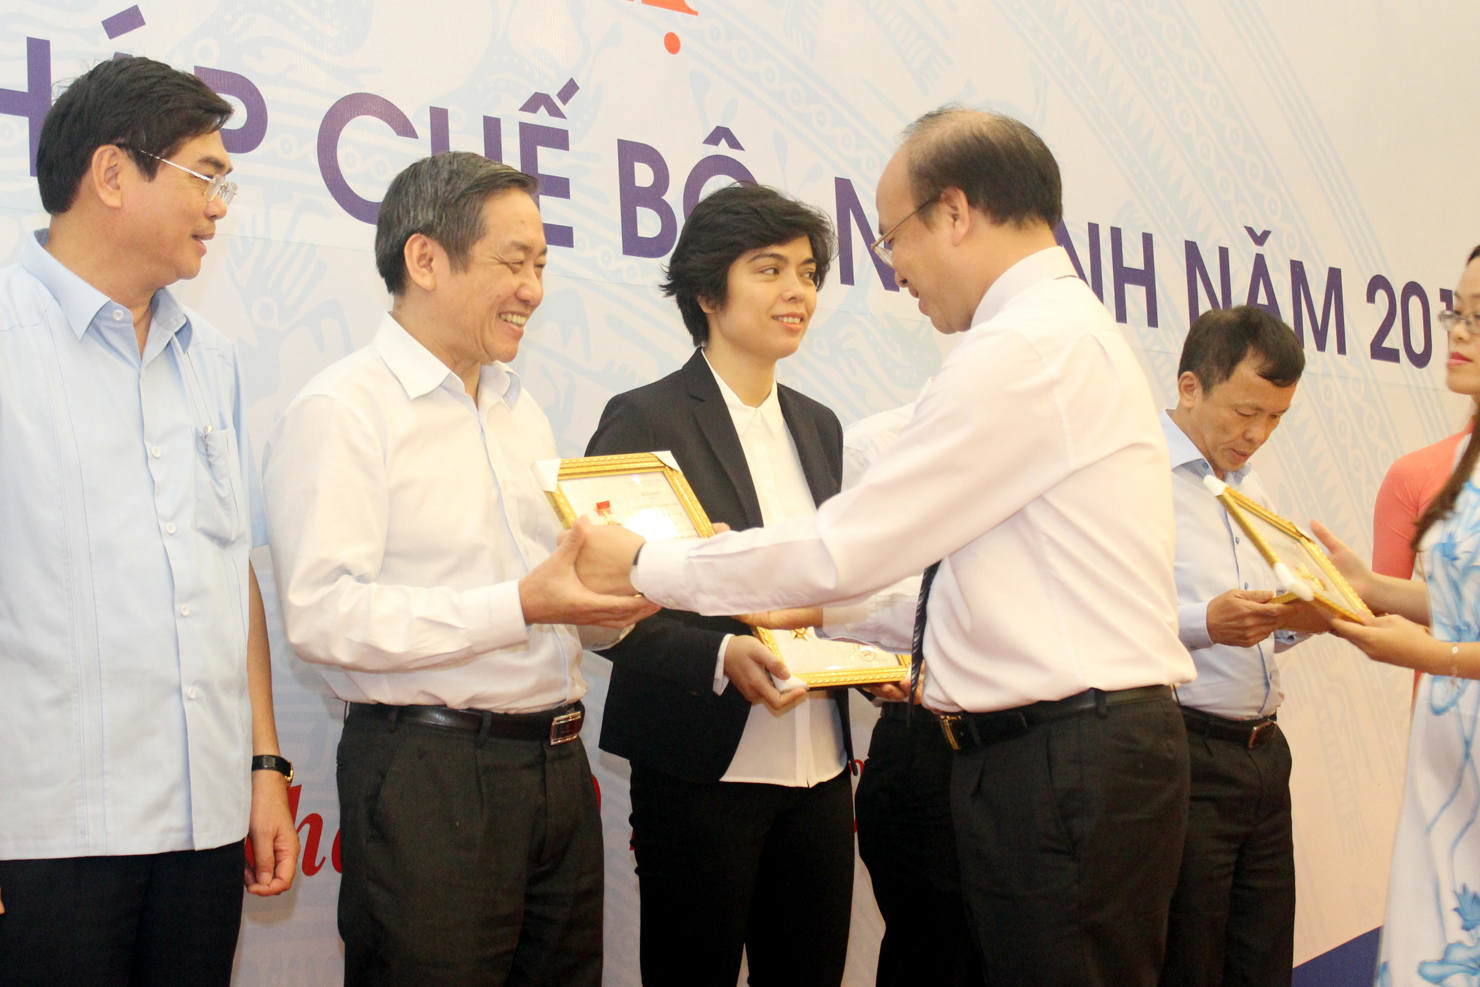 Ông Phạm Phan Dũng - Tổng Cục trưởng Tổng cục Dự trữ Nhà nước - Bộ Tài chính (thứ 2 từ trái sang) đón nhận Kỷ niệm chương từ đại diện của Bộ Tư pháp trao tặng.